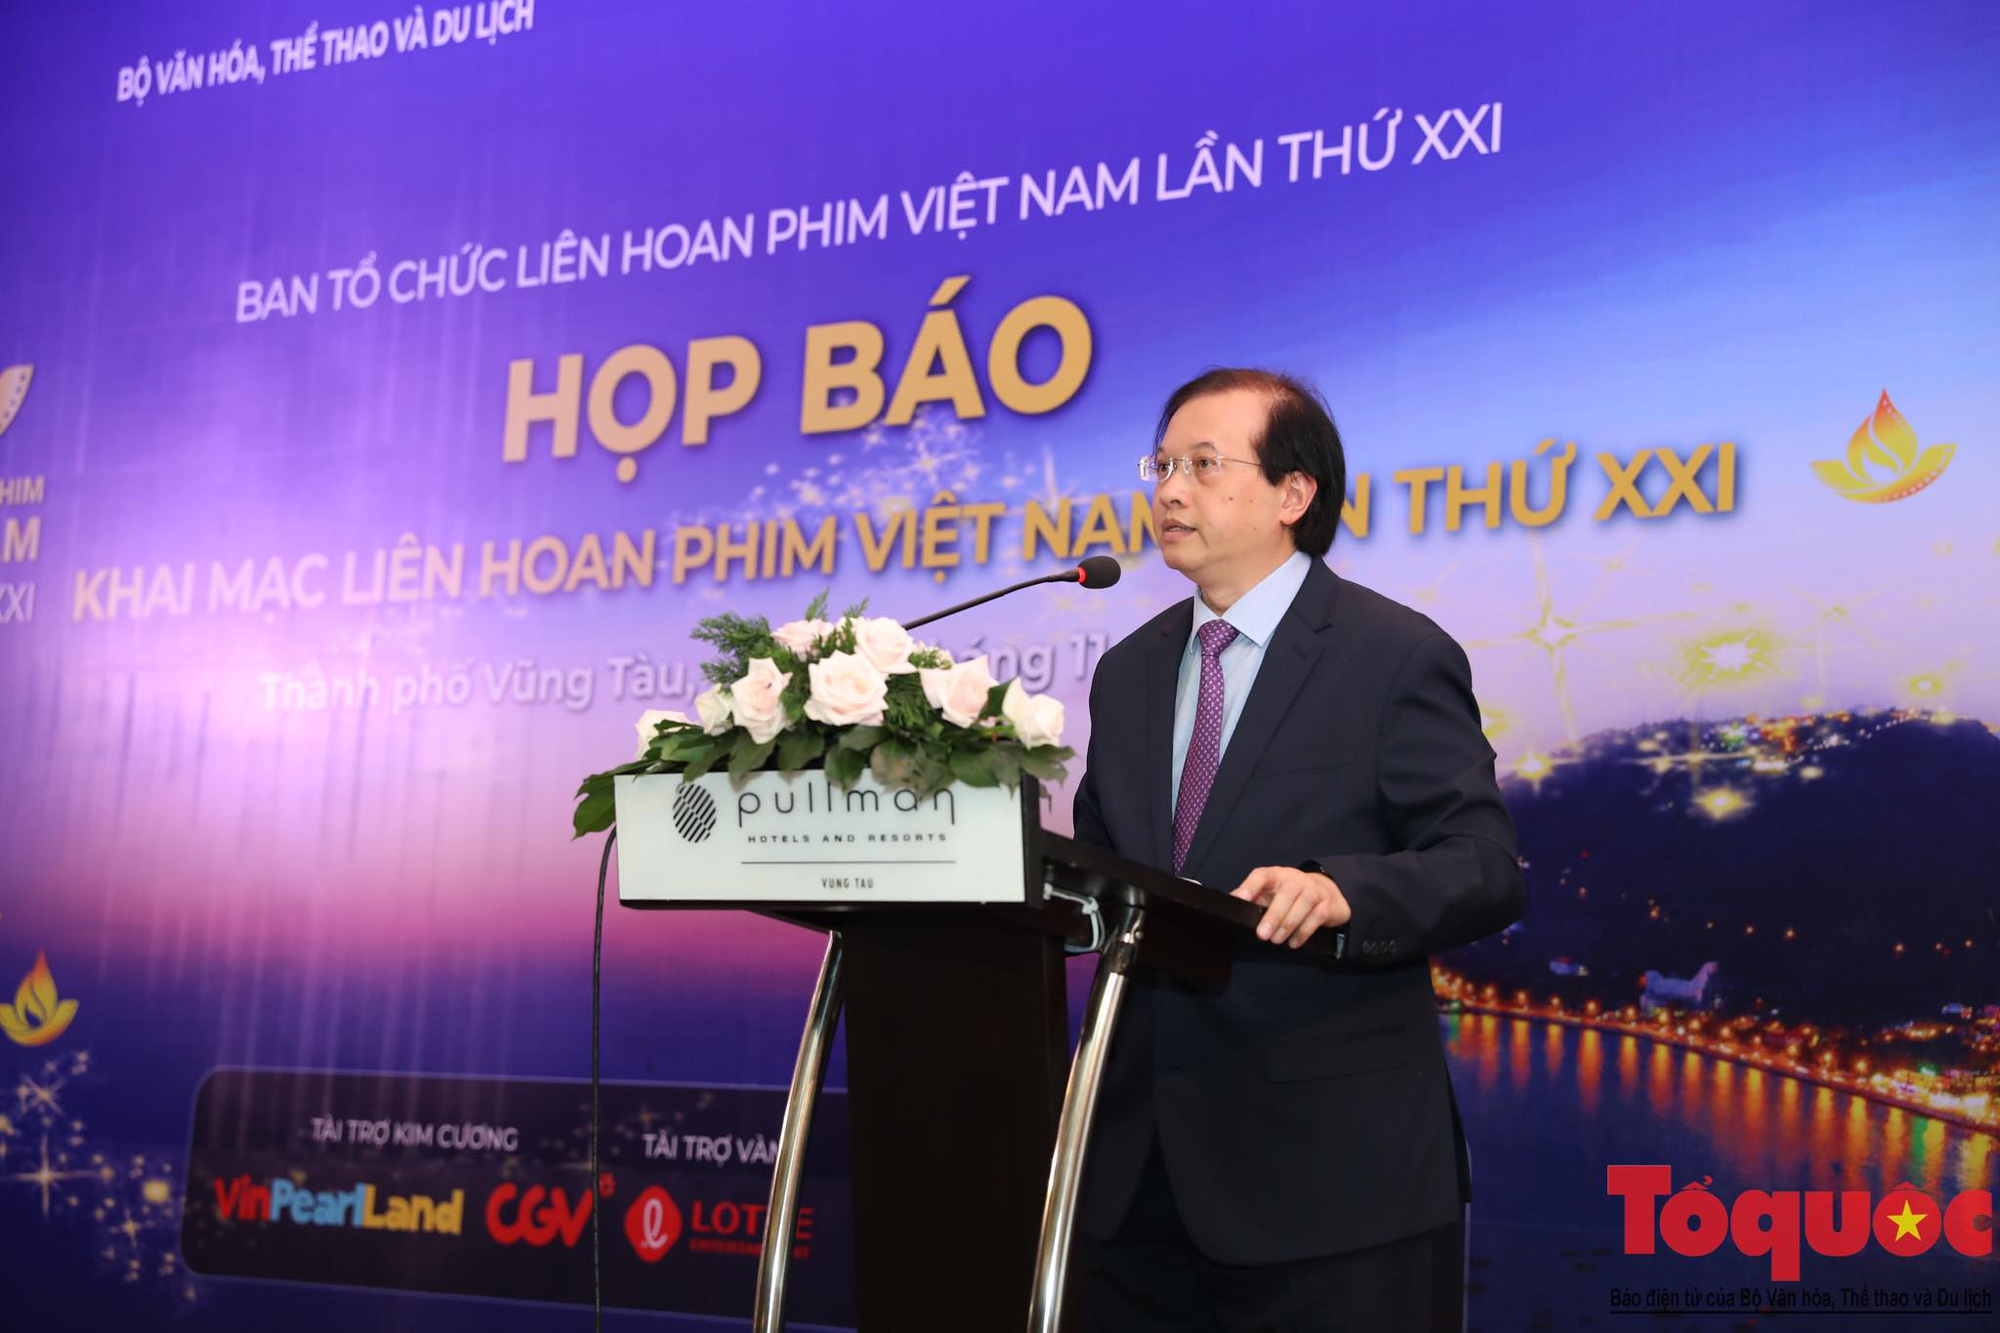 Hé lộ Lễ khai mạc và Bế mạc Liên hoan phim Việt Nam lần thứ XXI - Ảnh 2.